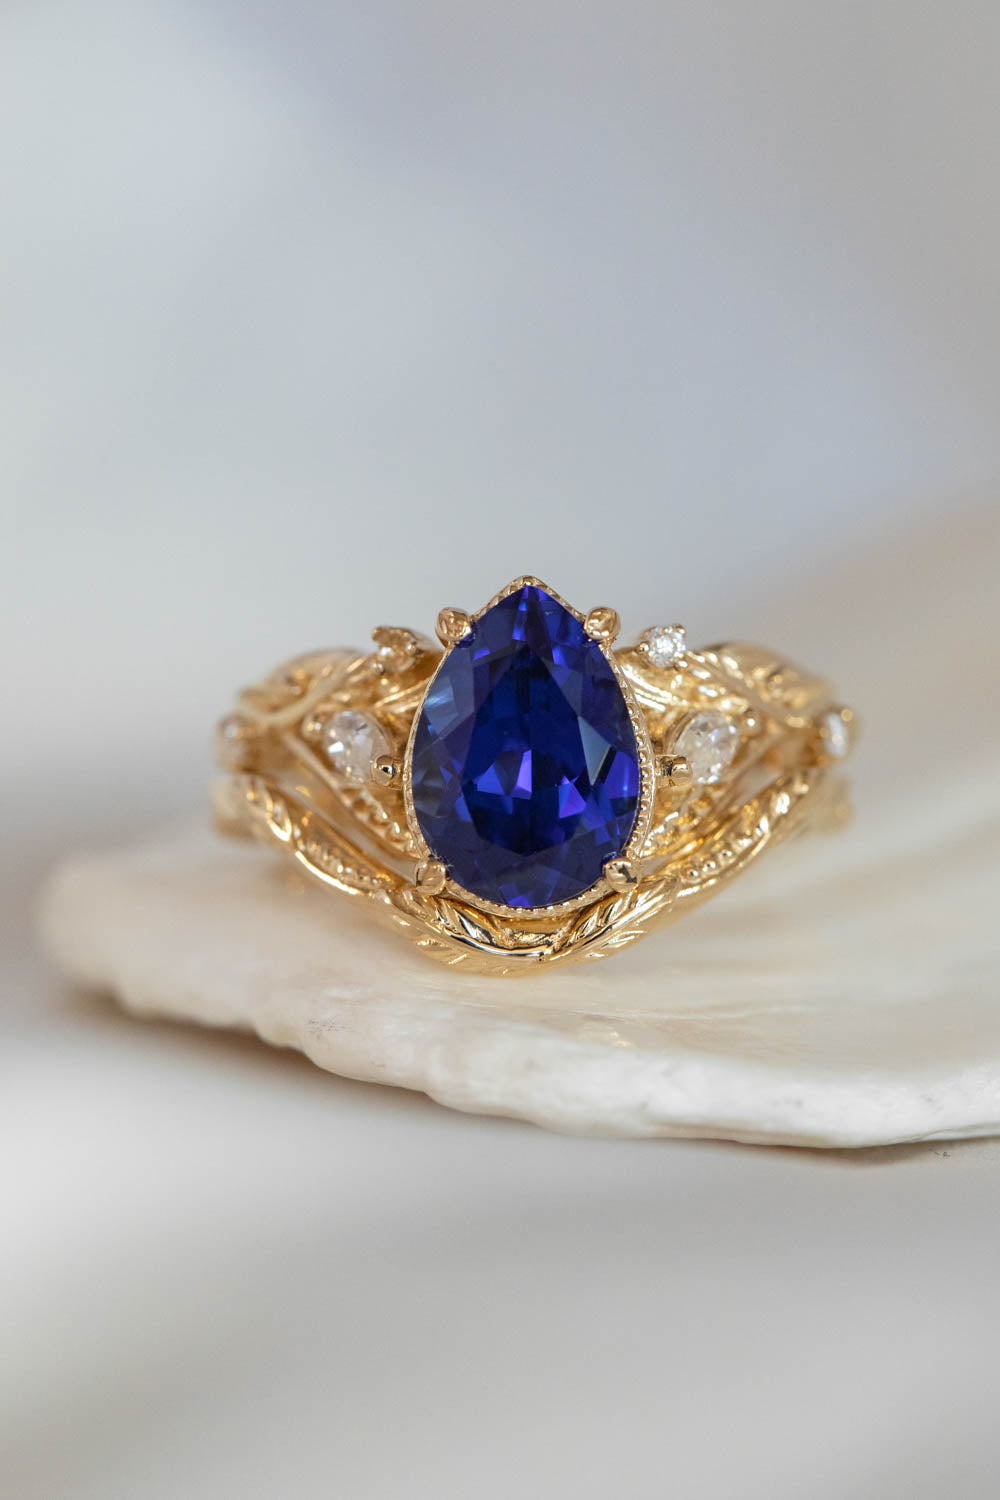 Patricia asymmetric | custom bridal ring set with pear cut gemstone 10x7 mm - Eden Garden Jewelry™